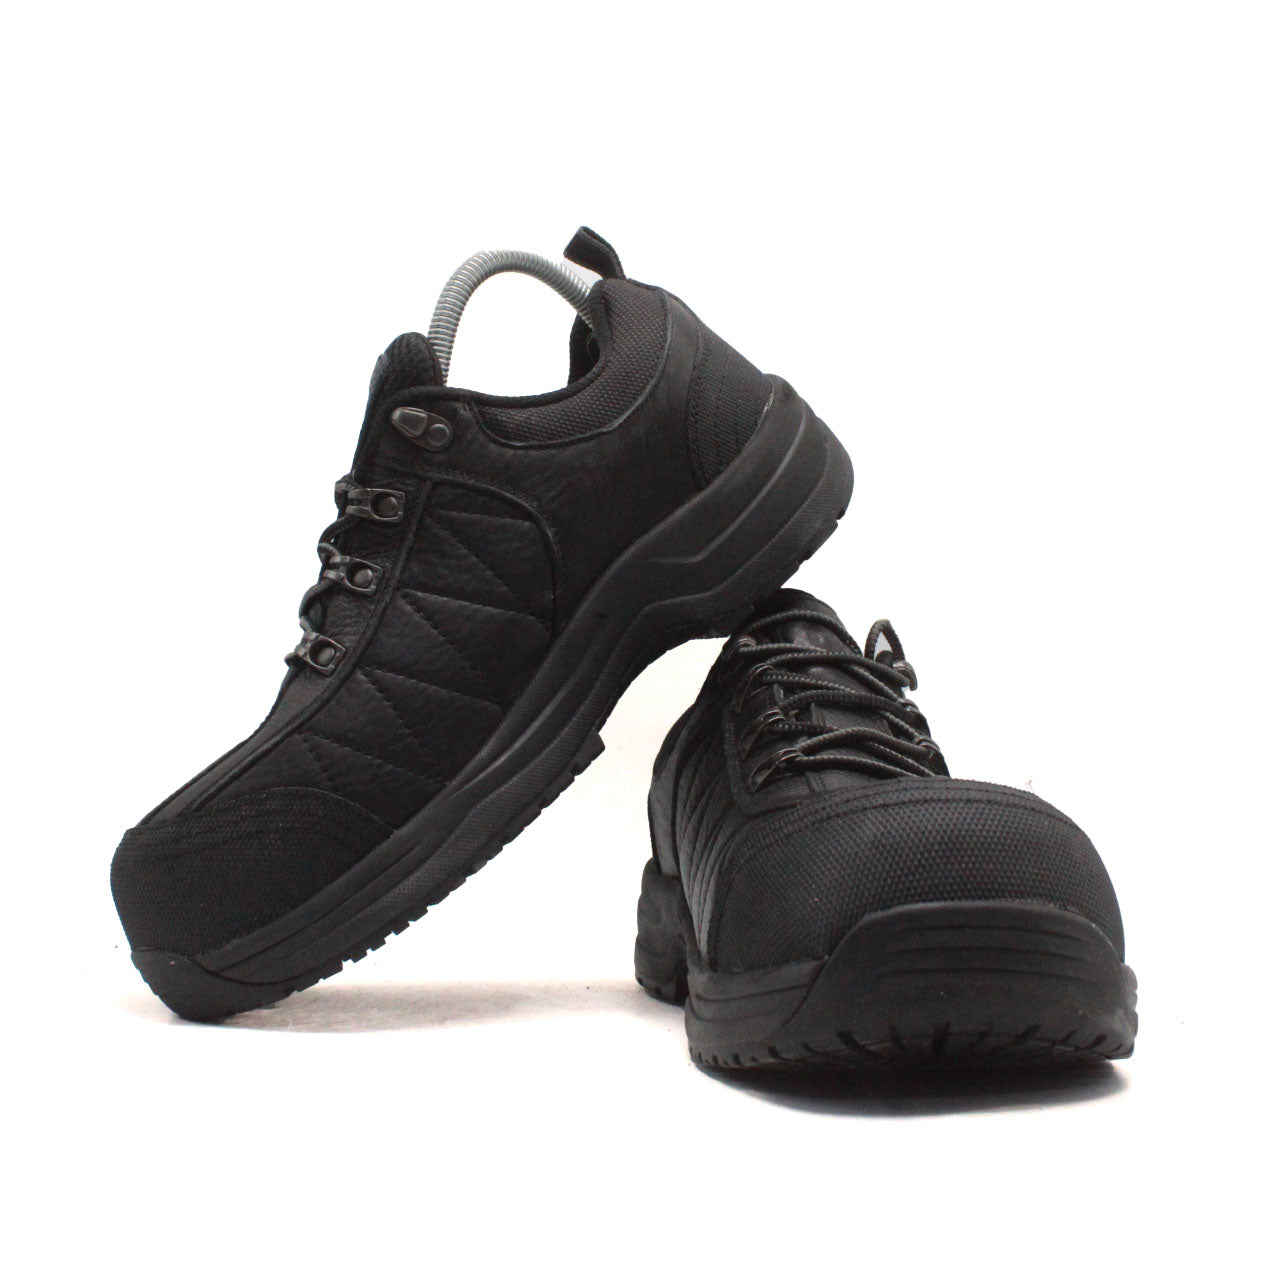 ORTHOFEET Dolomite Work Shoes - Black